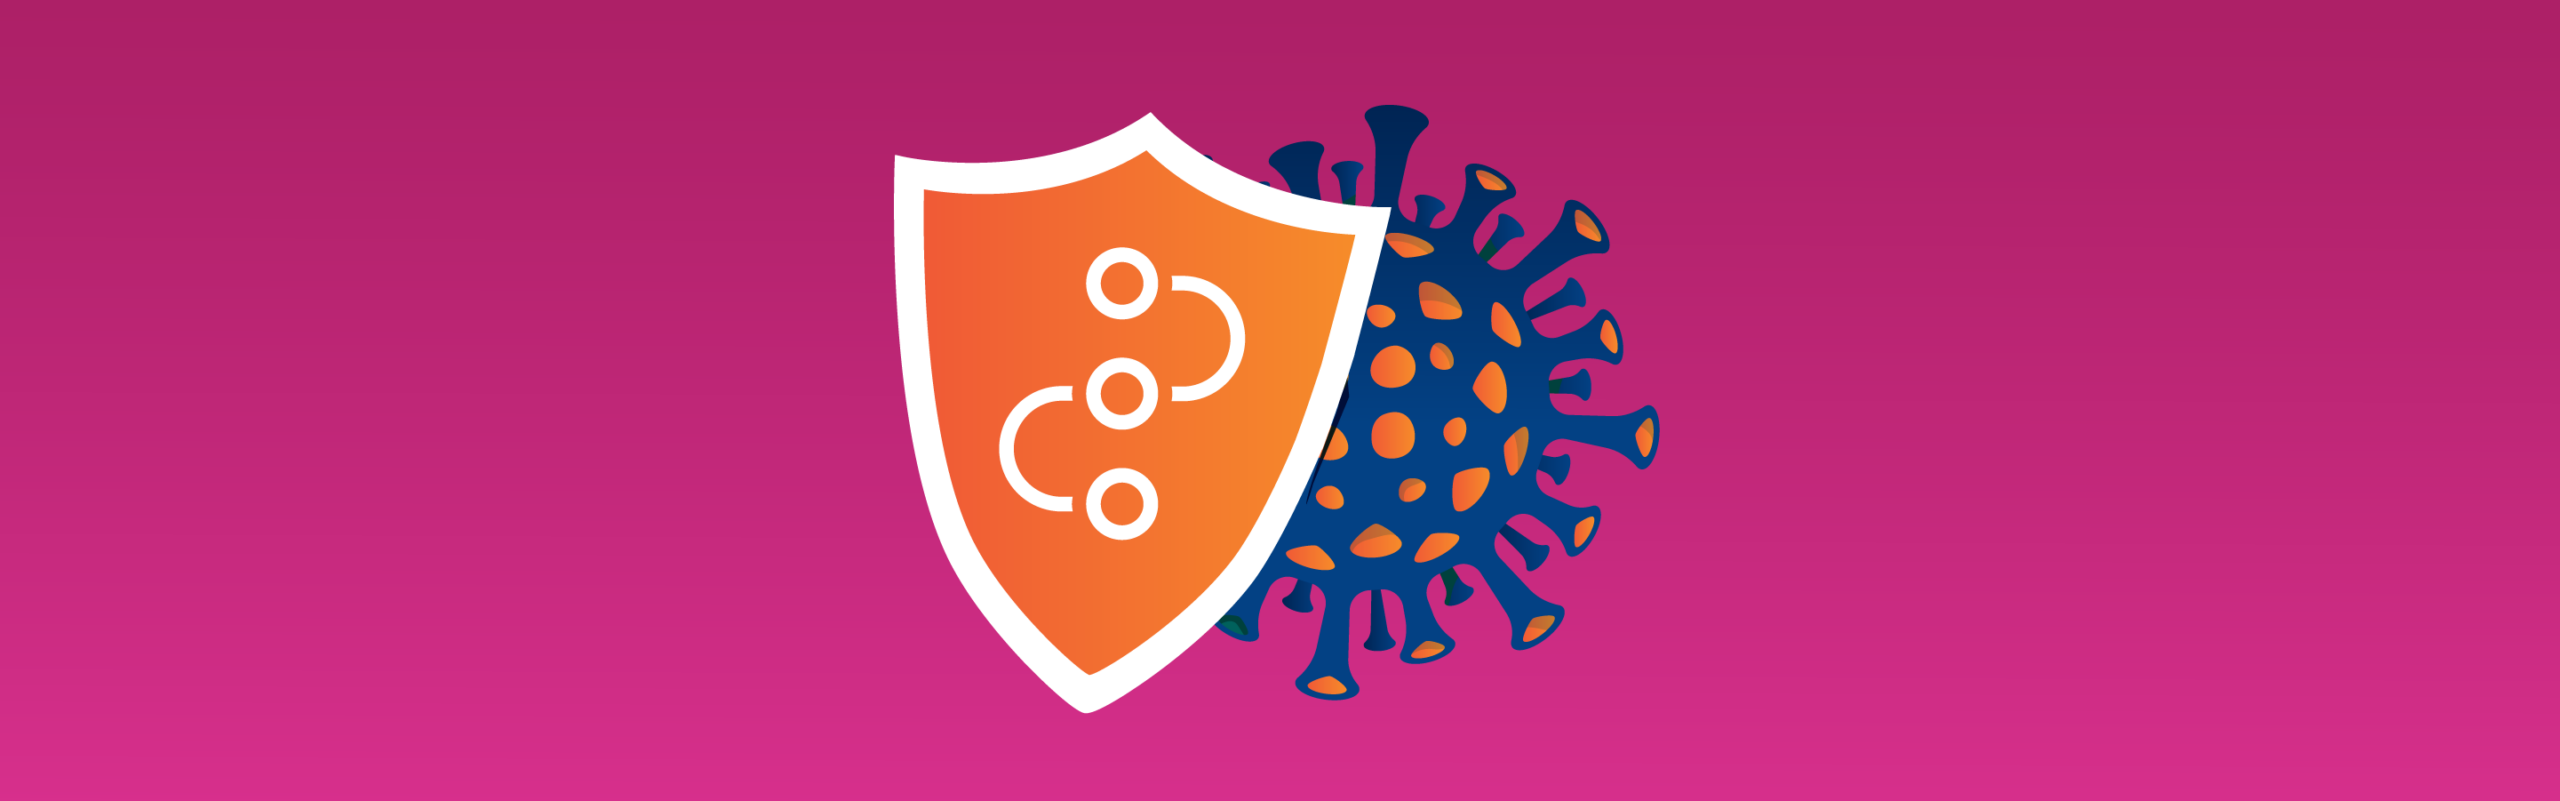 Coronavirus Blog Post Header